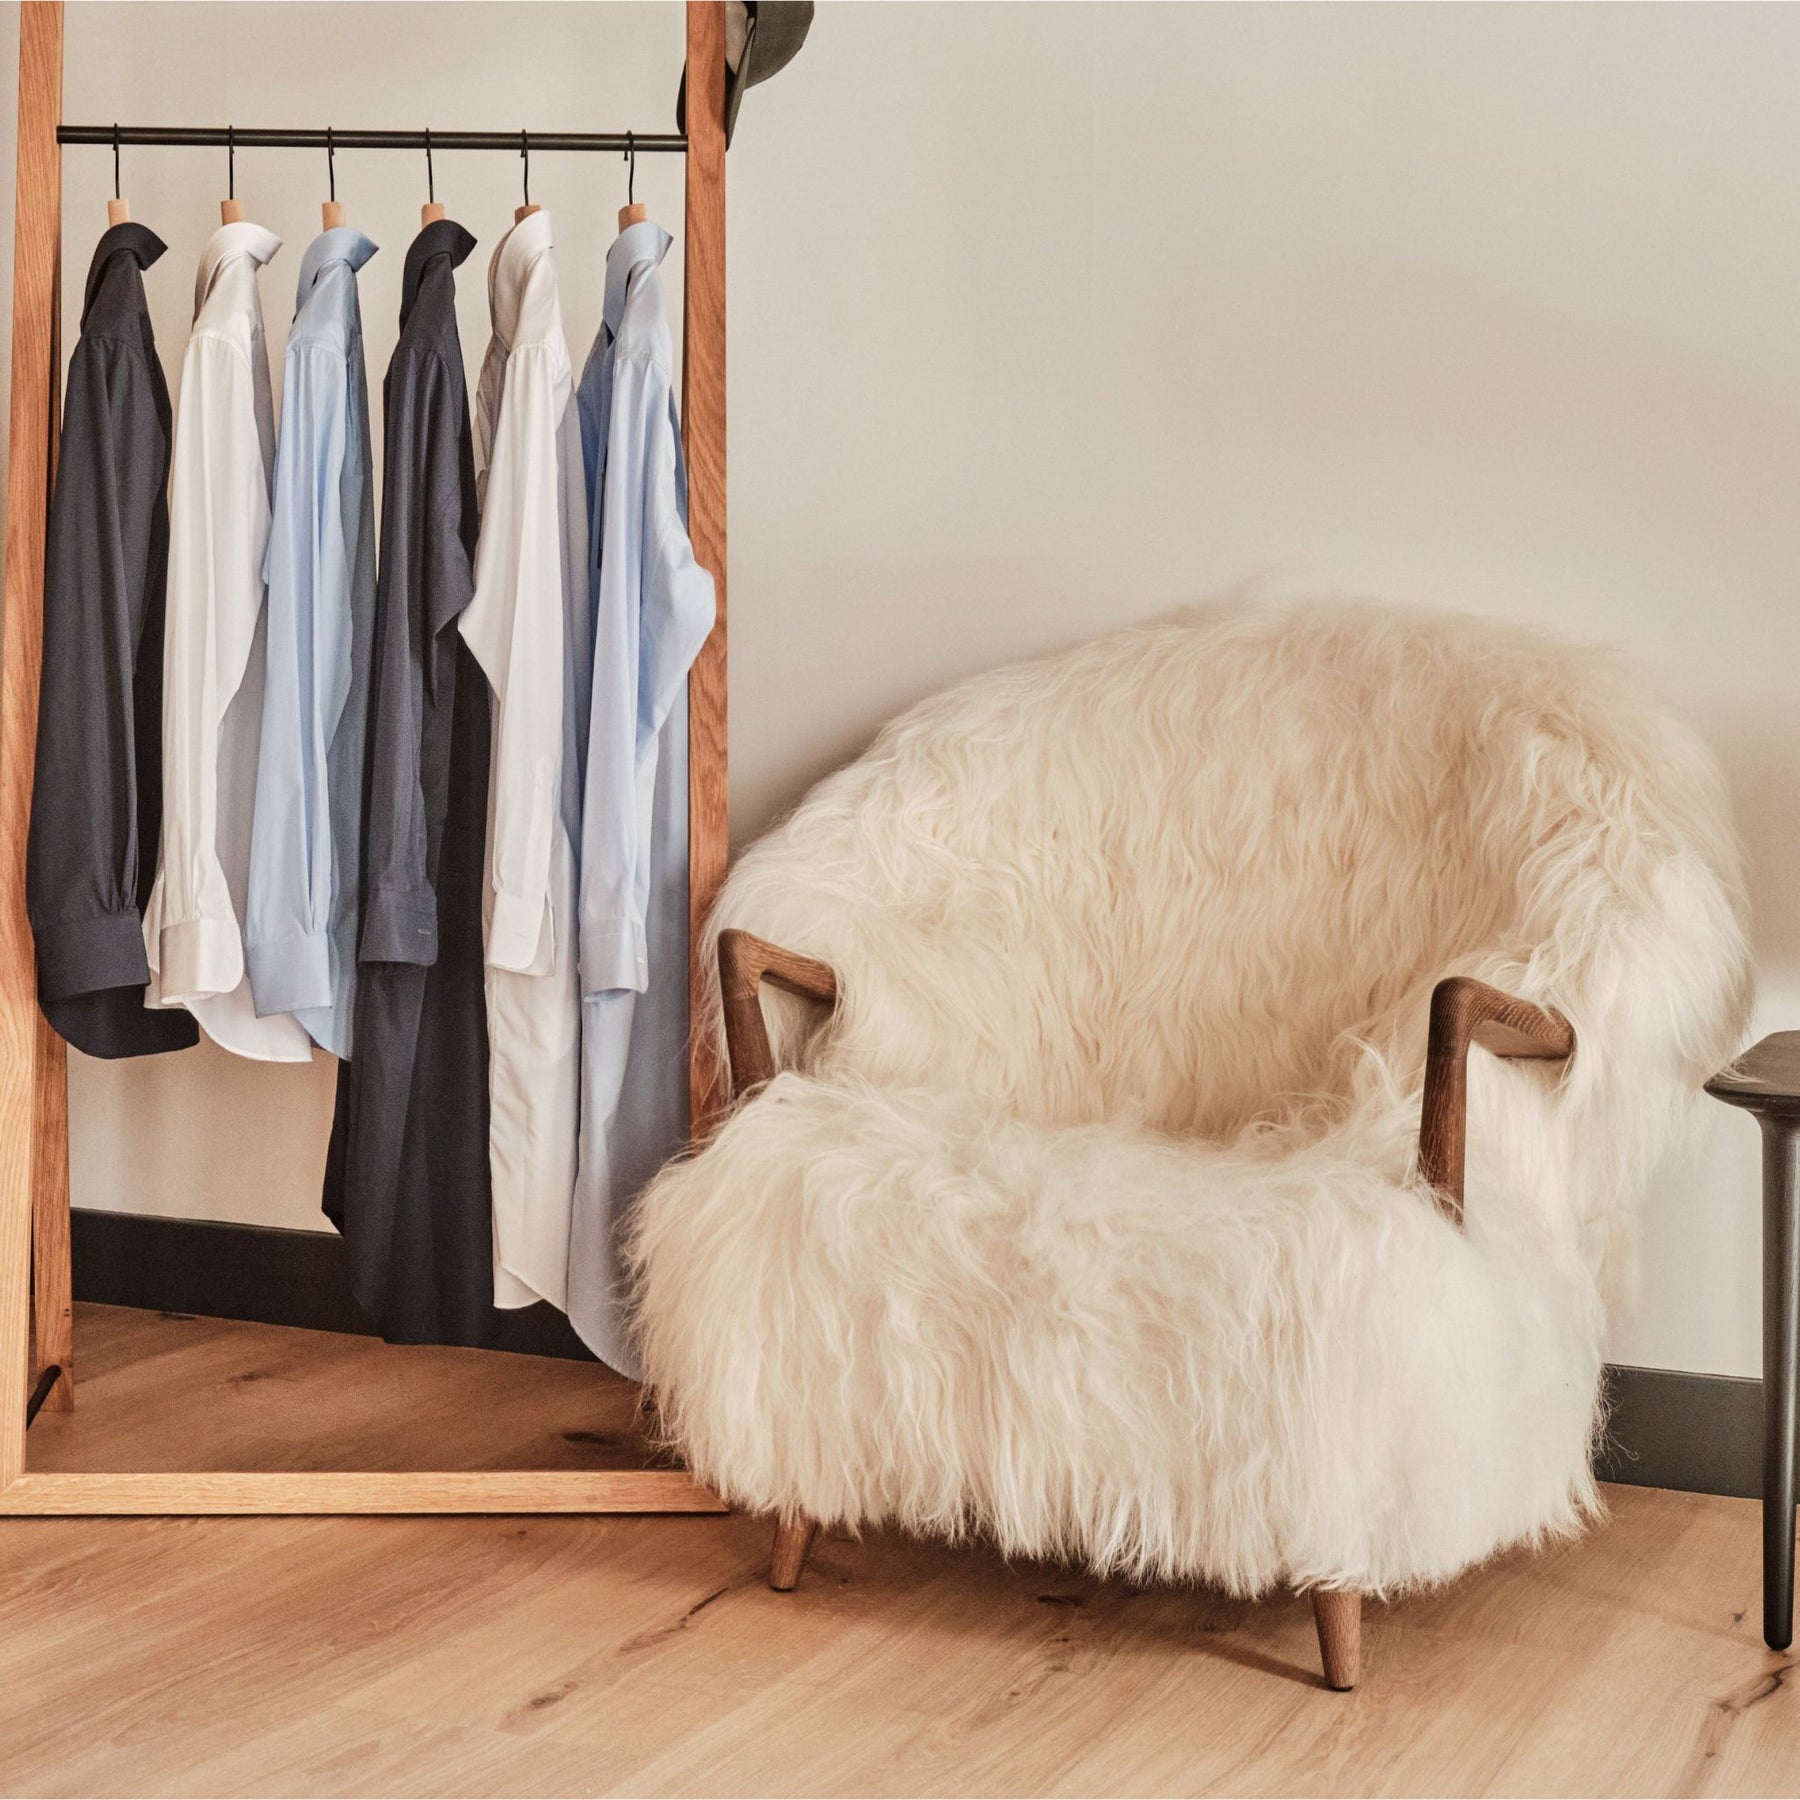 Eikund Fluffy Lounge Chair White Sheepskin in Norwegian Loft by Wardrobe